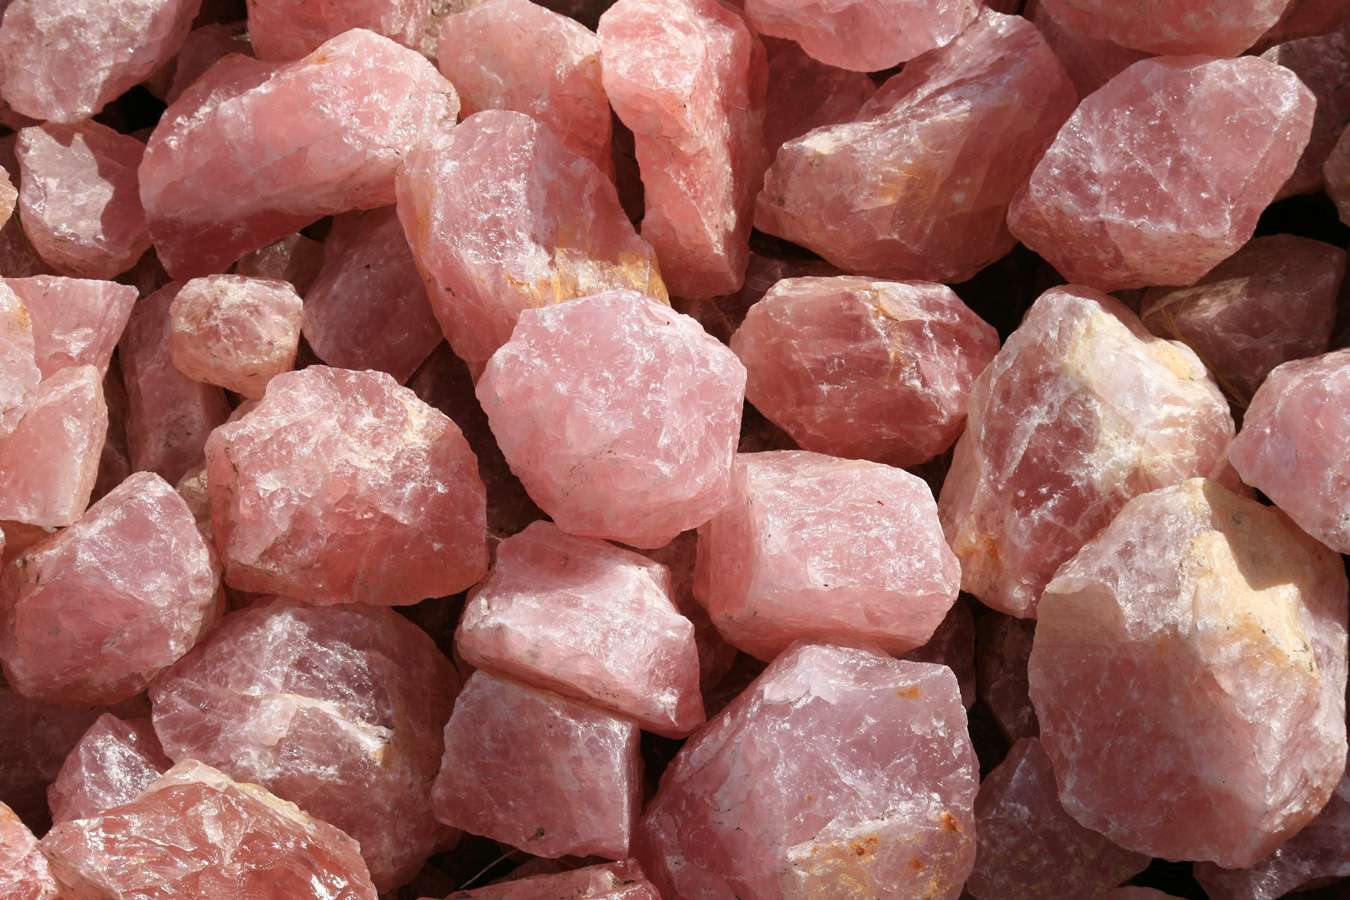 Raw rose quartz